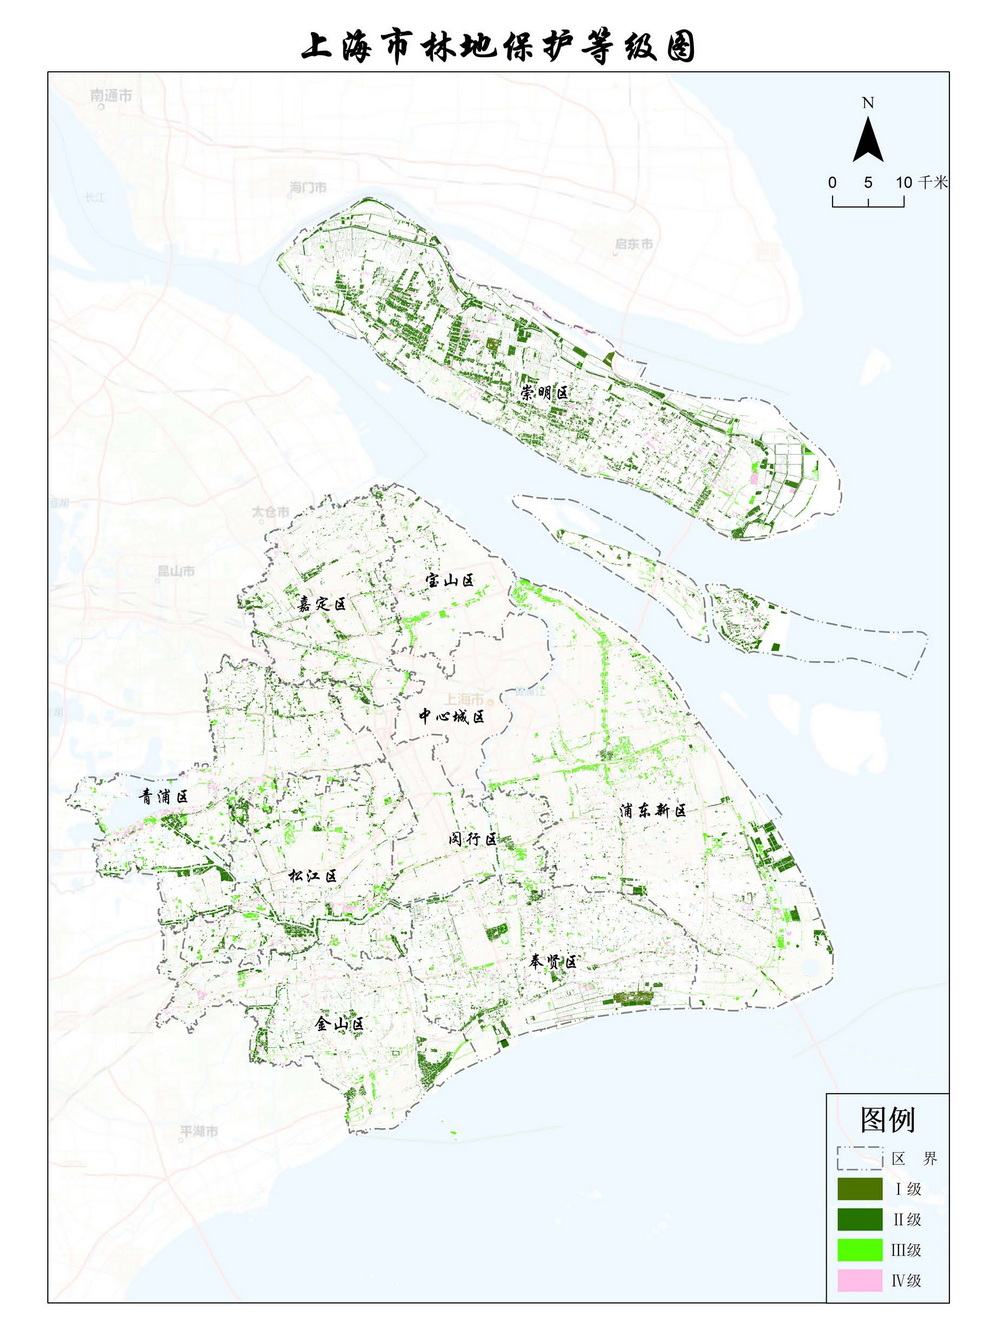 上海市森林和林地保护利用规划文本 公开稿 附图_页面_69.jpg